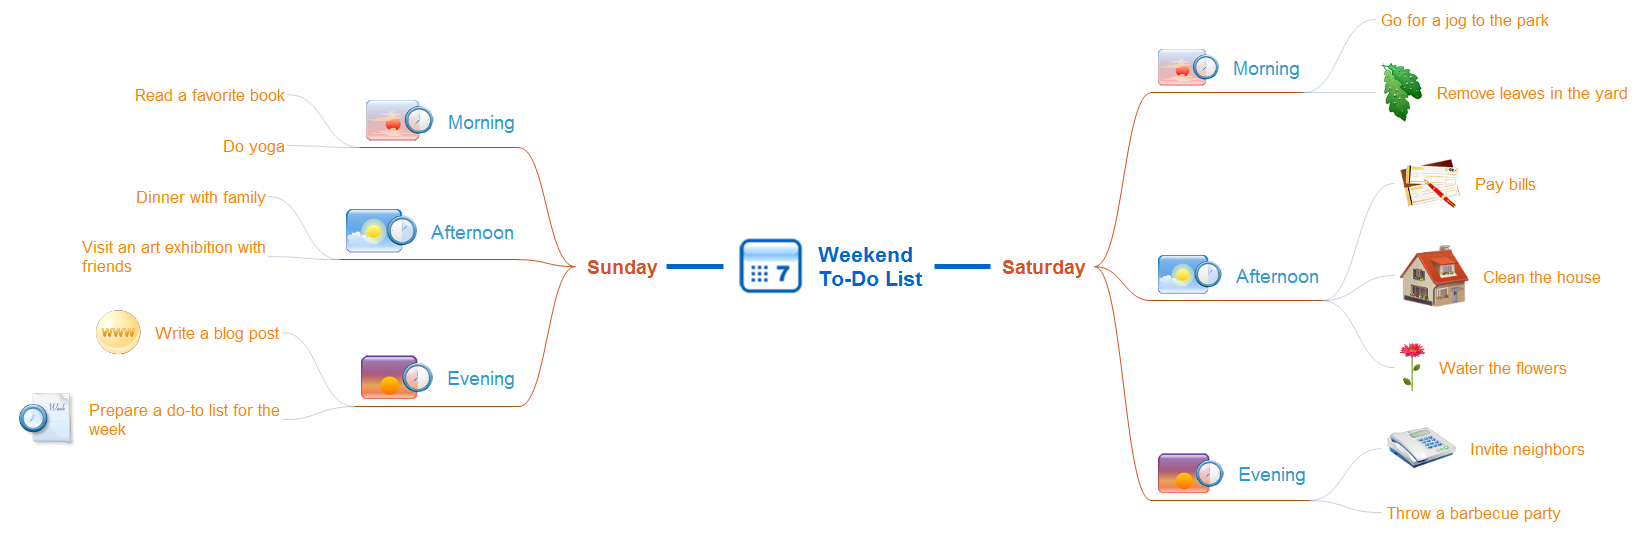 Weekend to-do list mindmap